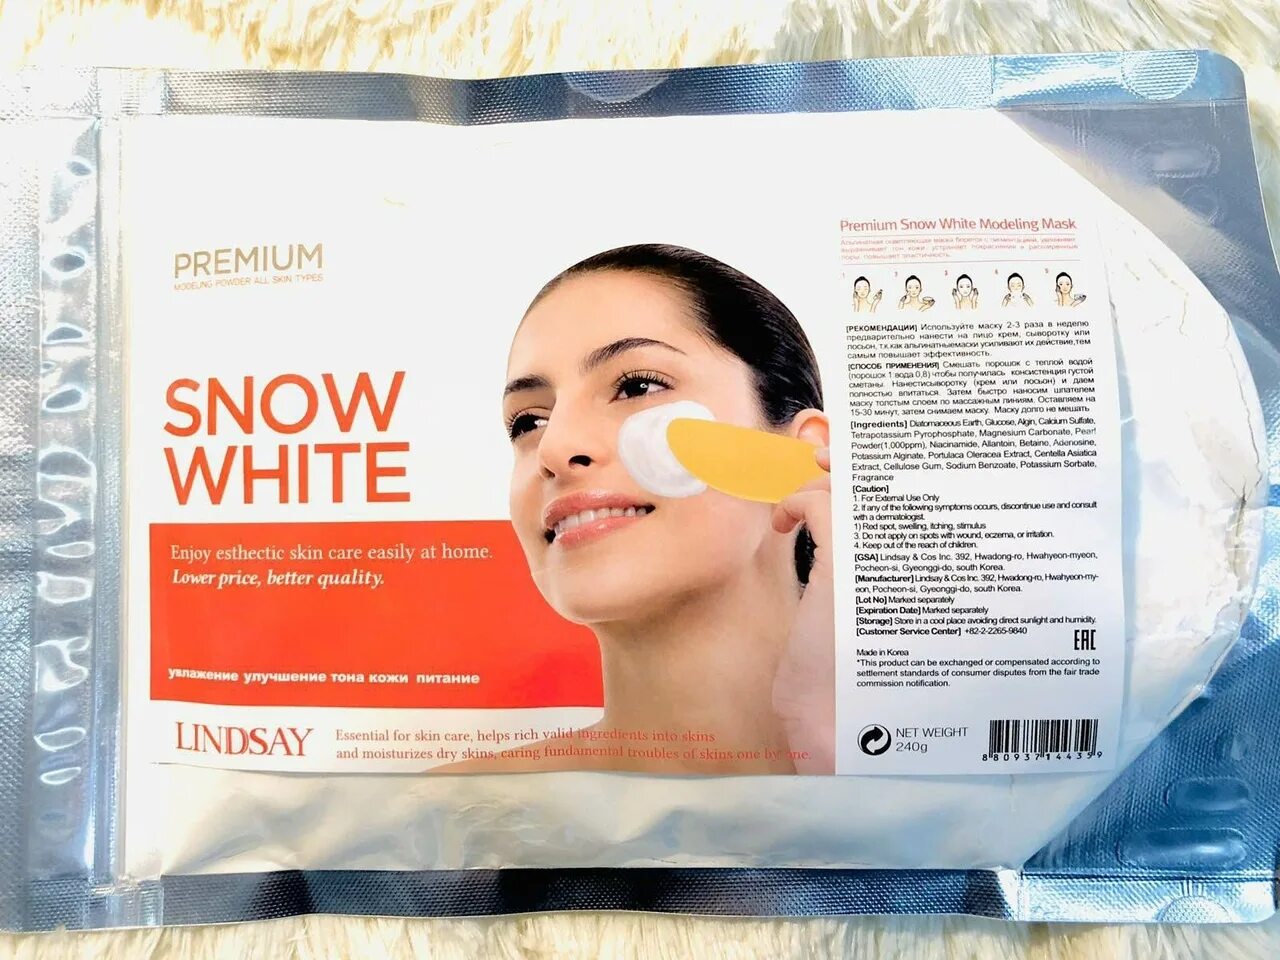 Маска для лица альгинатная отбеливающая Lindsay Snow White Premium Modeling Mask, 240g. Lindsay альгинатная маска Snow White. Альгинатная маска для лица Premium Lindsay Snow White. Lindsay альгинатная маска с жемчугом 240гр Snow White Modeling Mask.